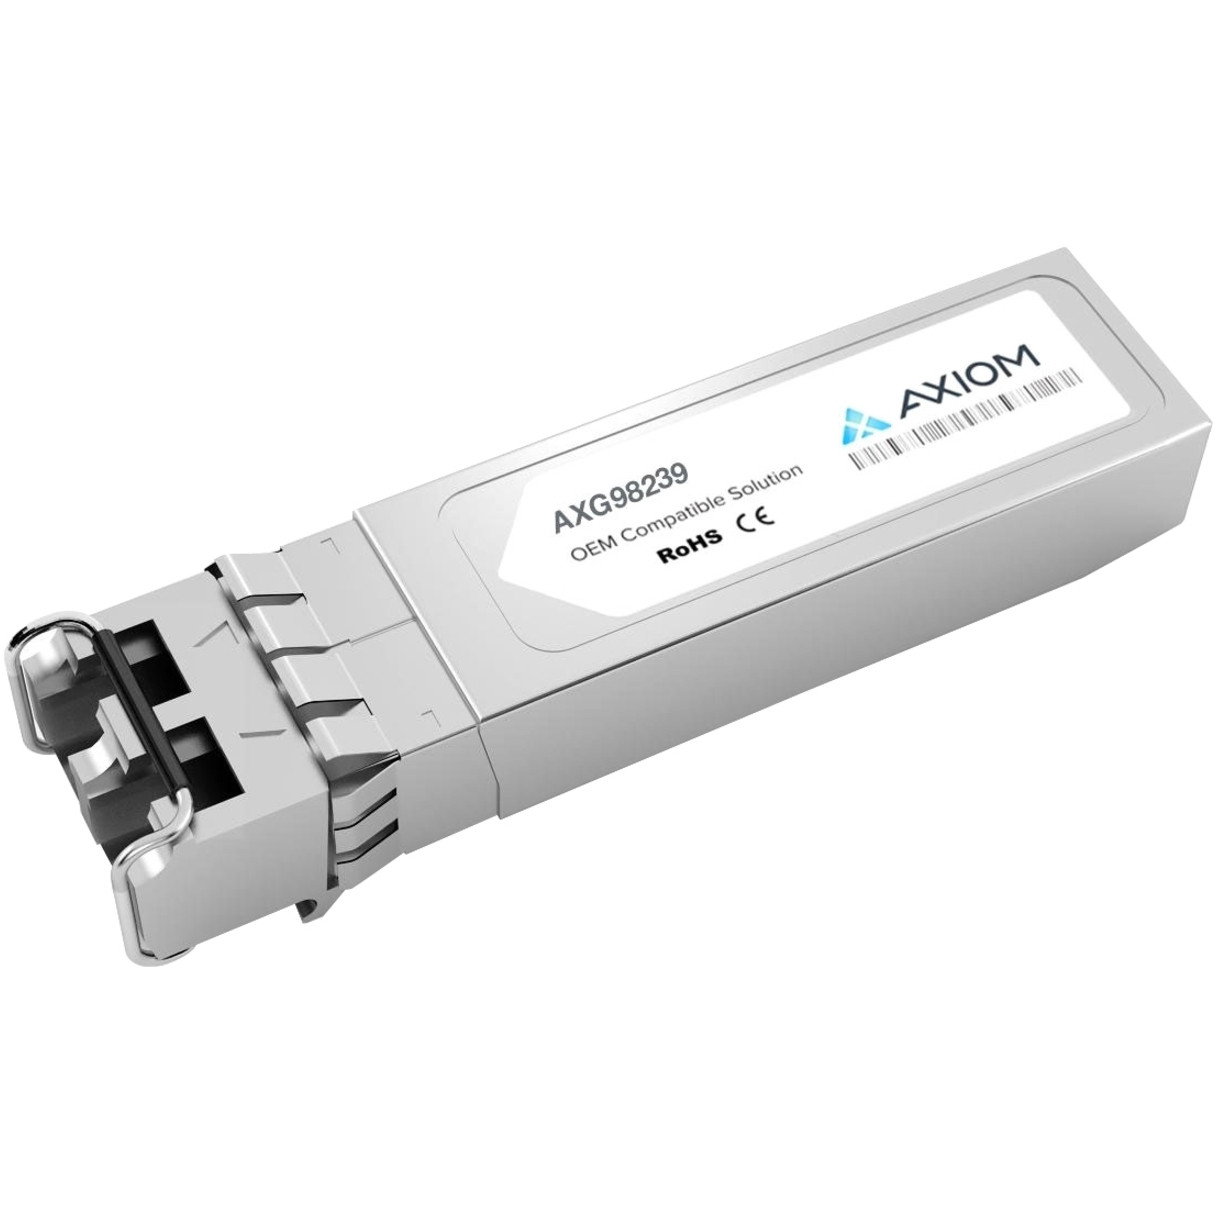 Axiom Memory Solutions 10GBASE-SR SFP+ Transceiver for ArubaJ9150DTAA Compliant100% Aruba Compatible 10GBASE-SR SFP+ AXG98239